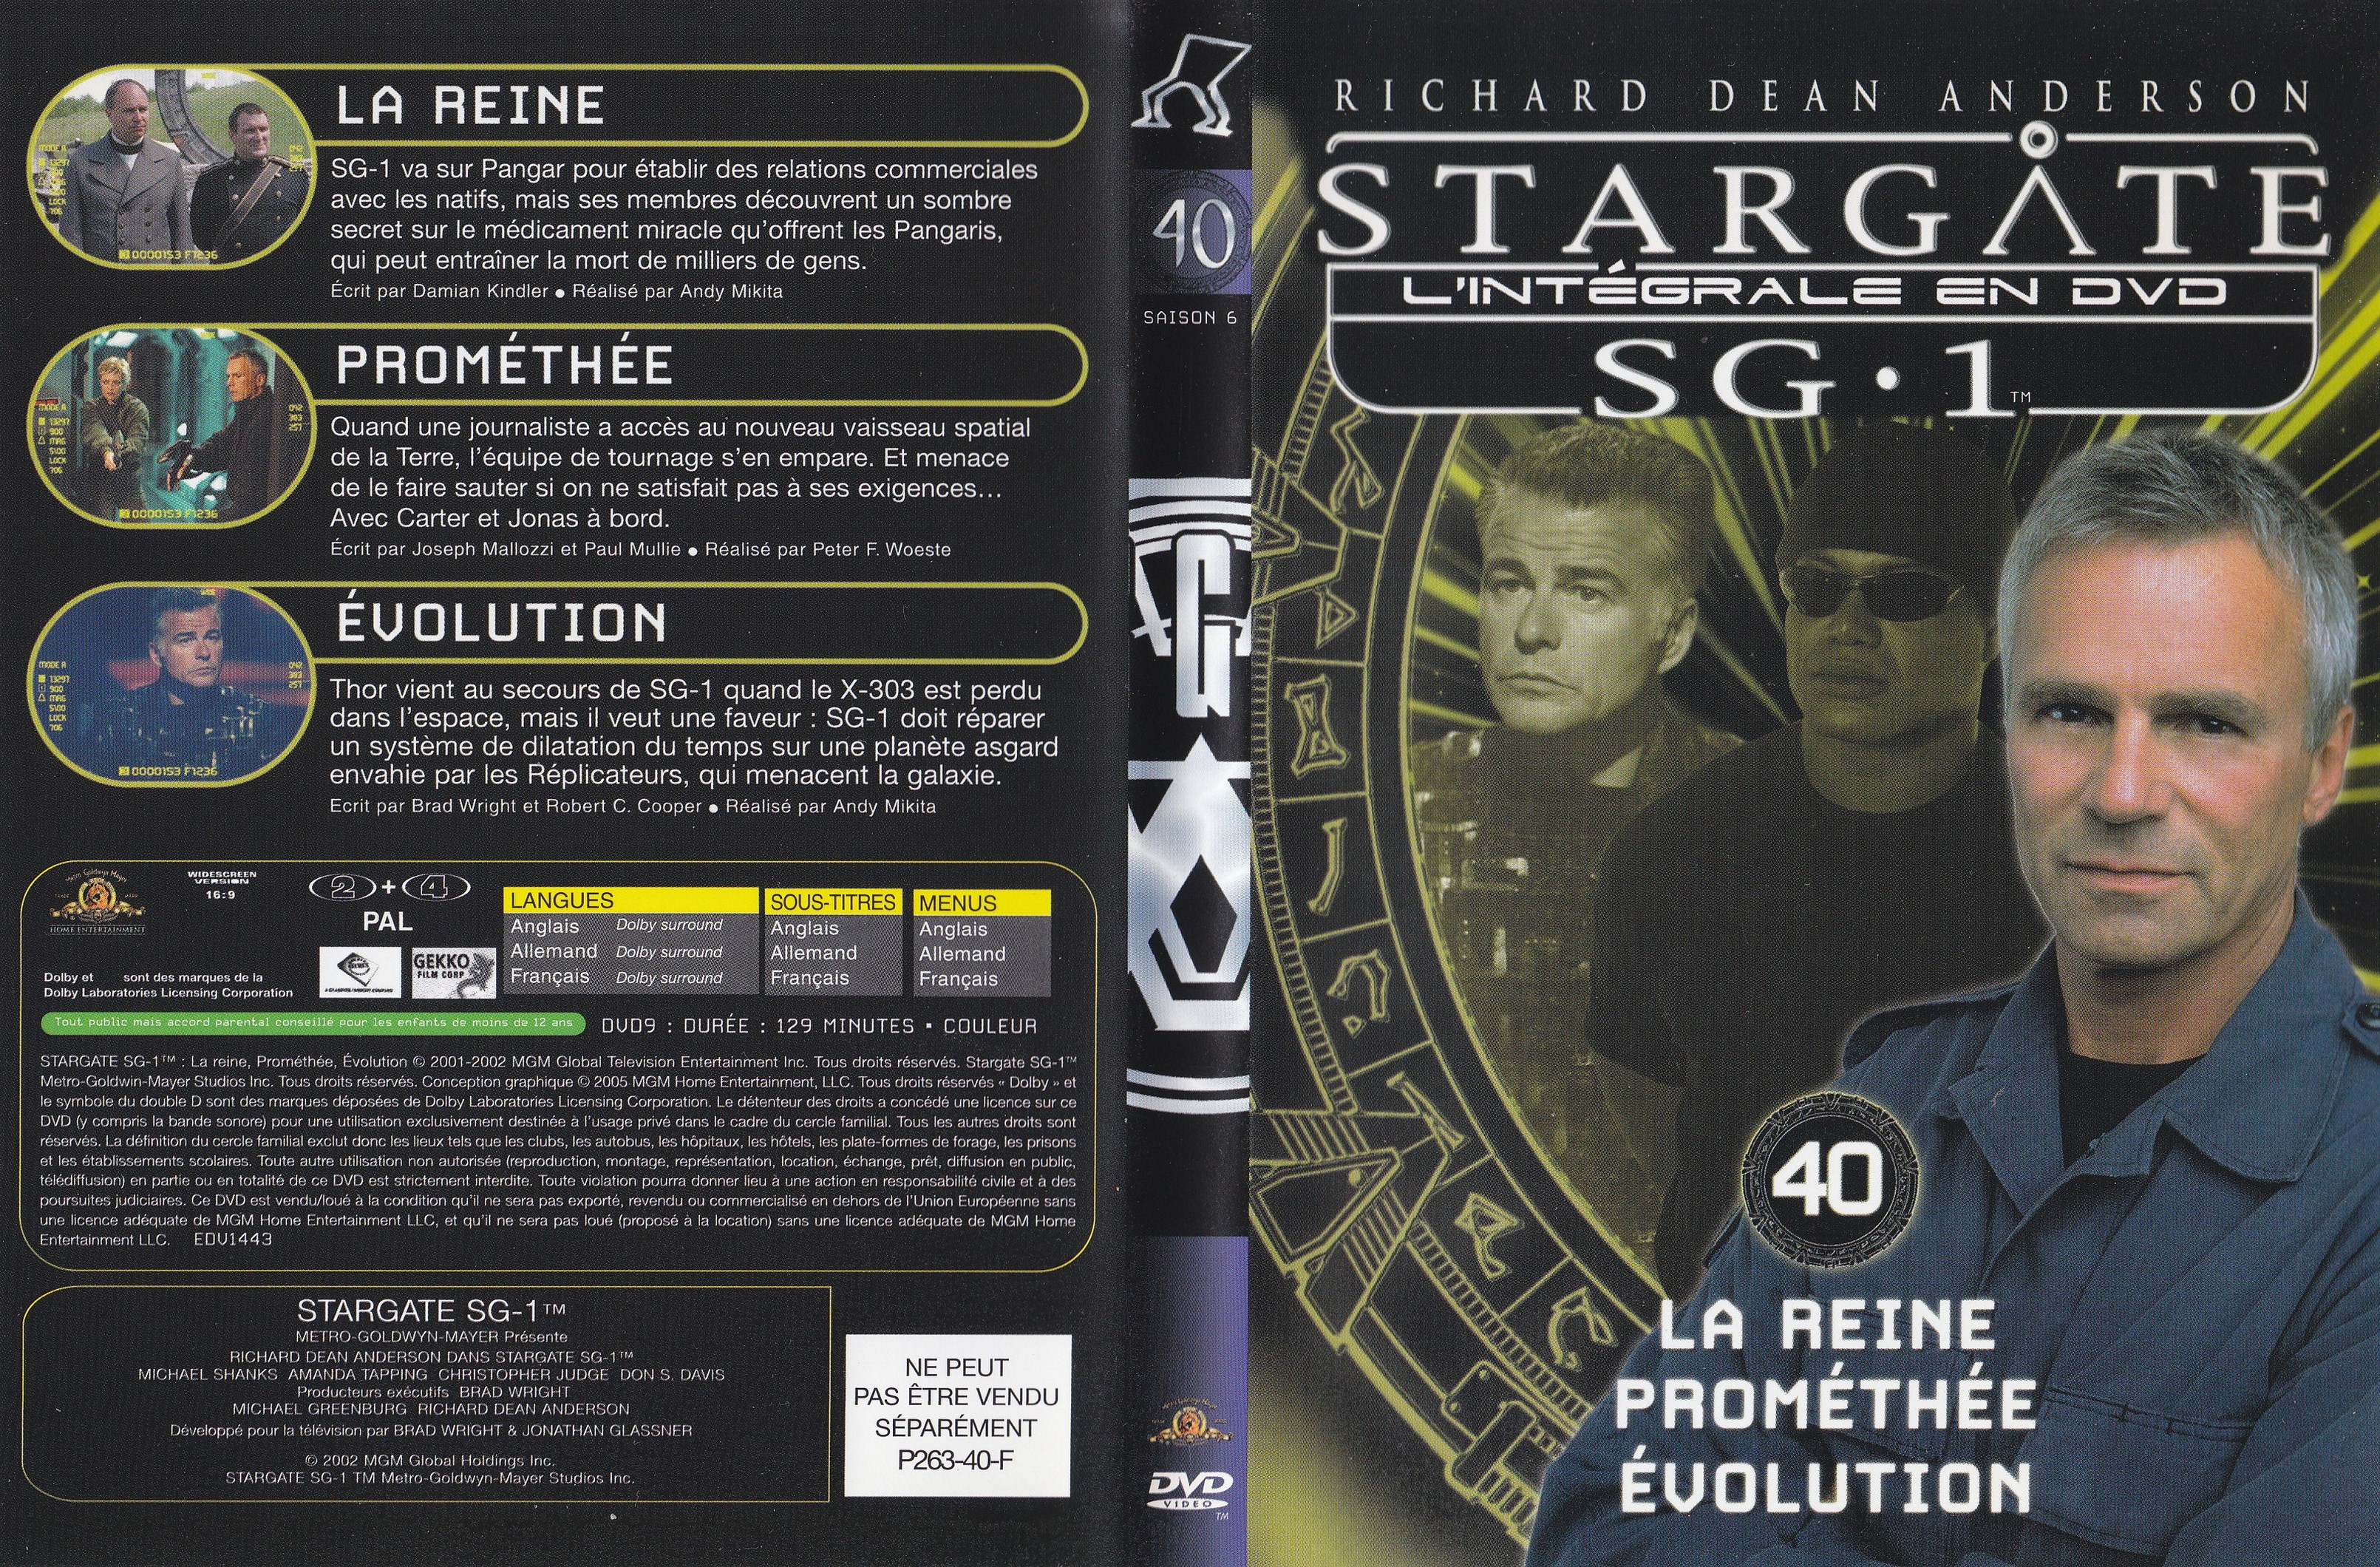 Stargate SG1 Intgrale Saison 6 vol 40